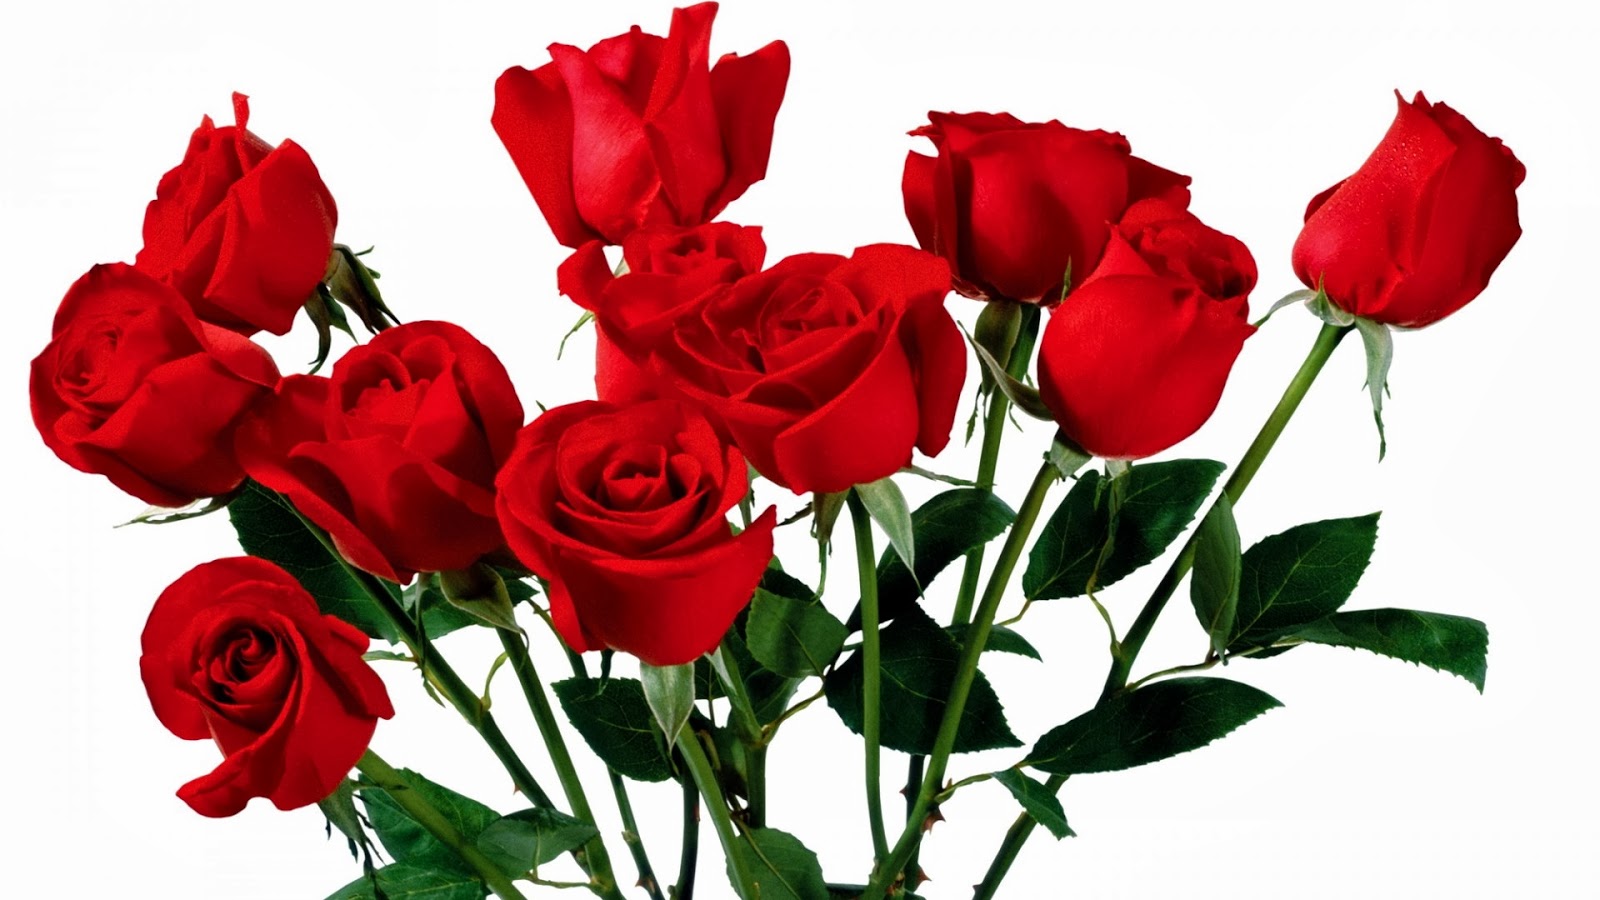 WALLPAPER ANDROID - IPHONE: Wallpaper Bunga Mawar Merah